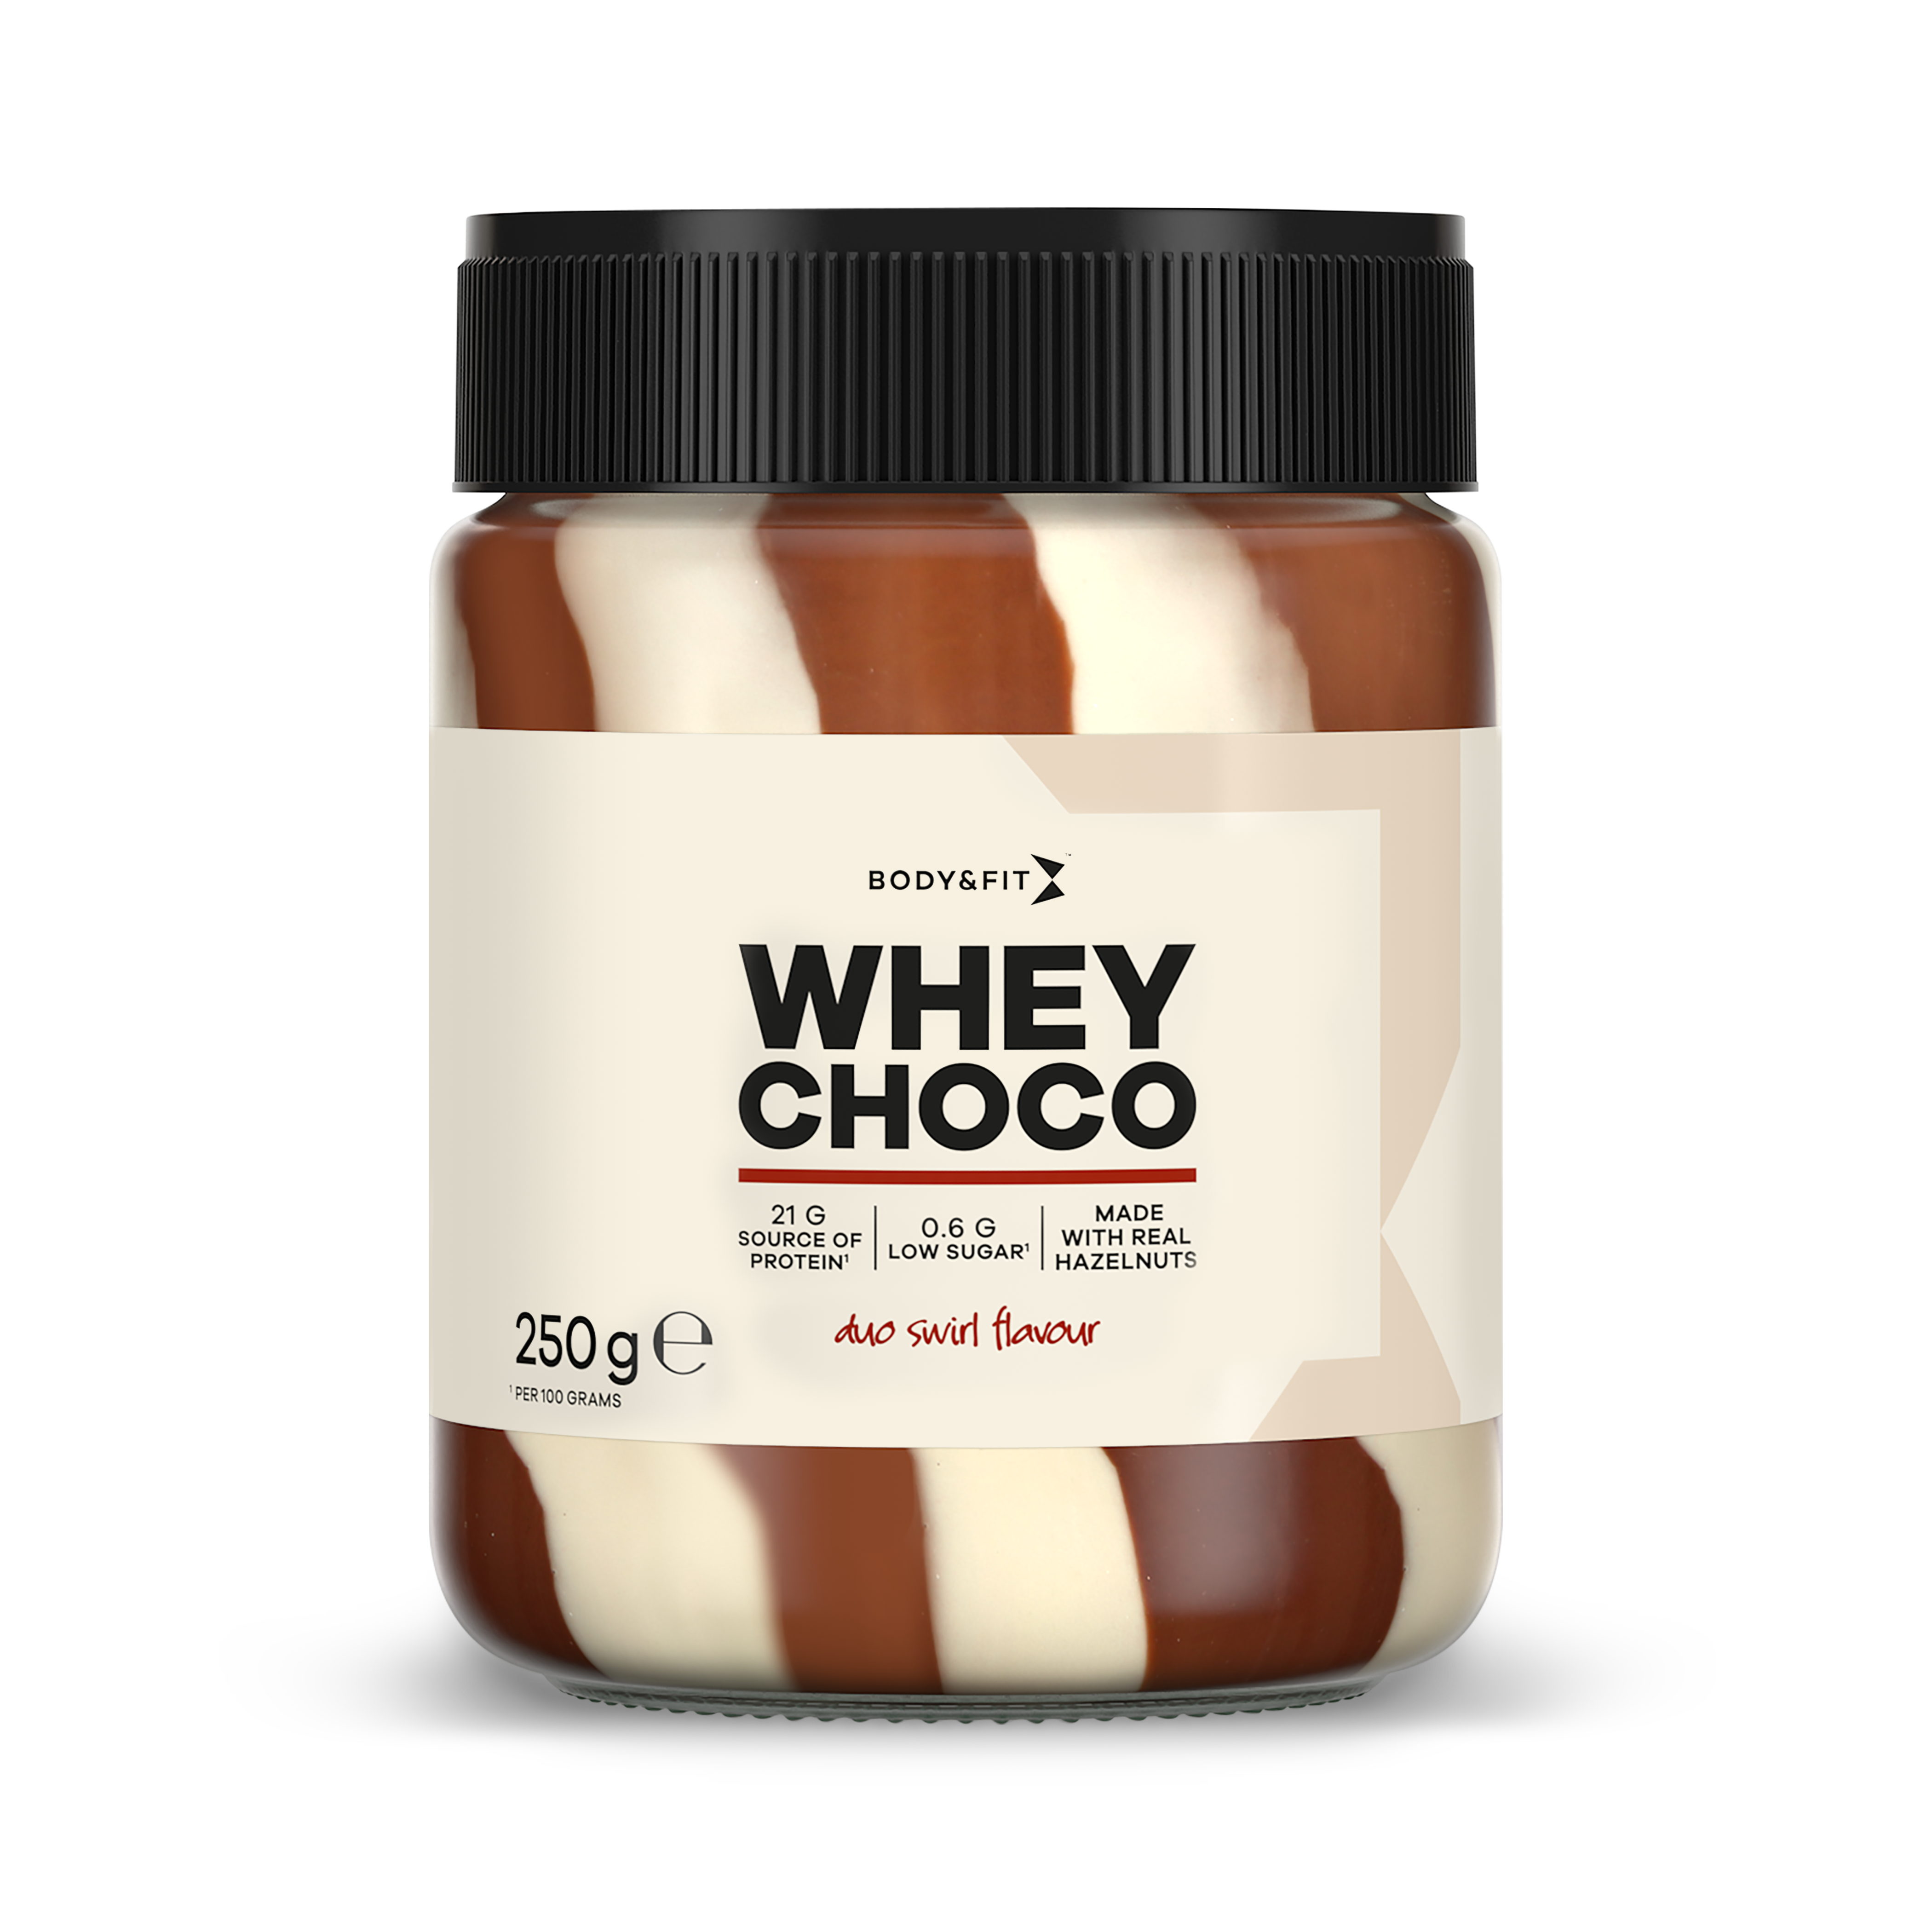 Body & Fit Whey Choco - Chocoladepasta met 21.4% Whey Eiwit - Duo Swirl